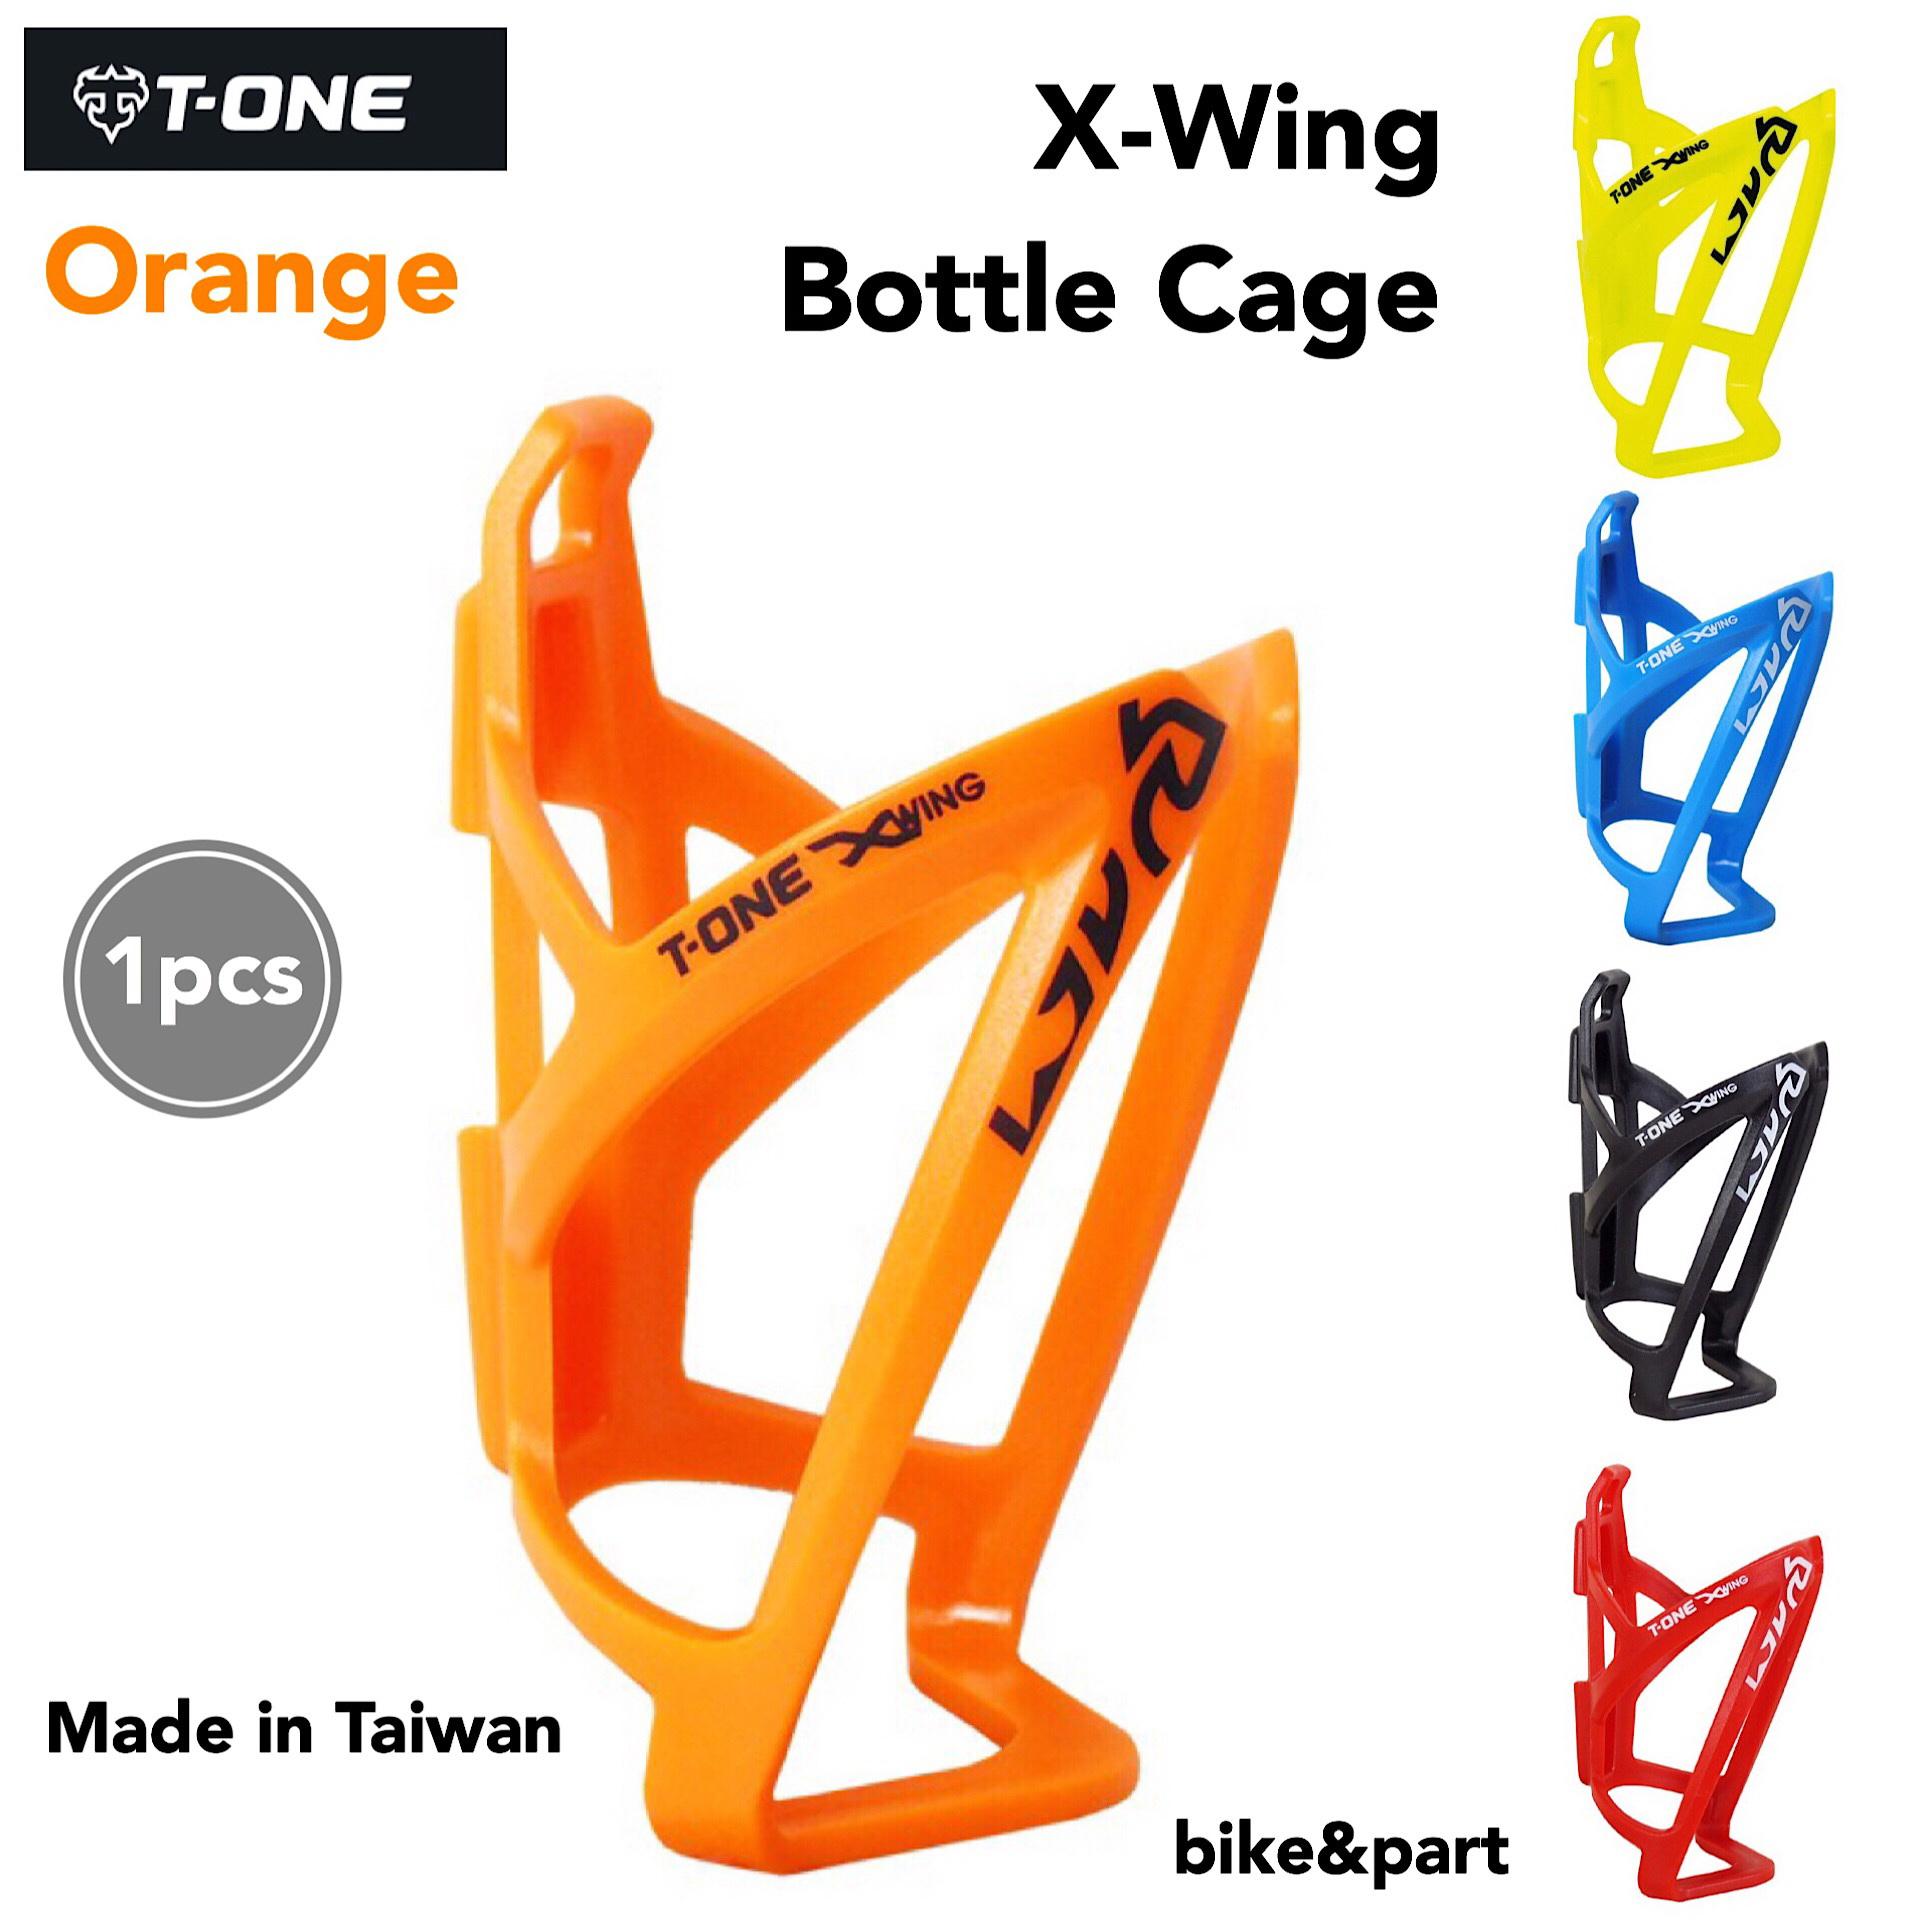 ขากระติก T-ONE X-WING Bottle Cage (T-BC07)